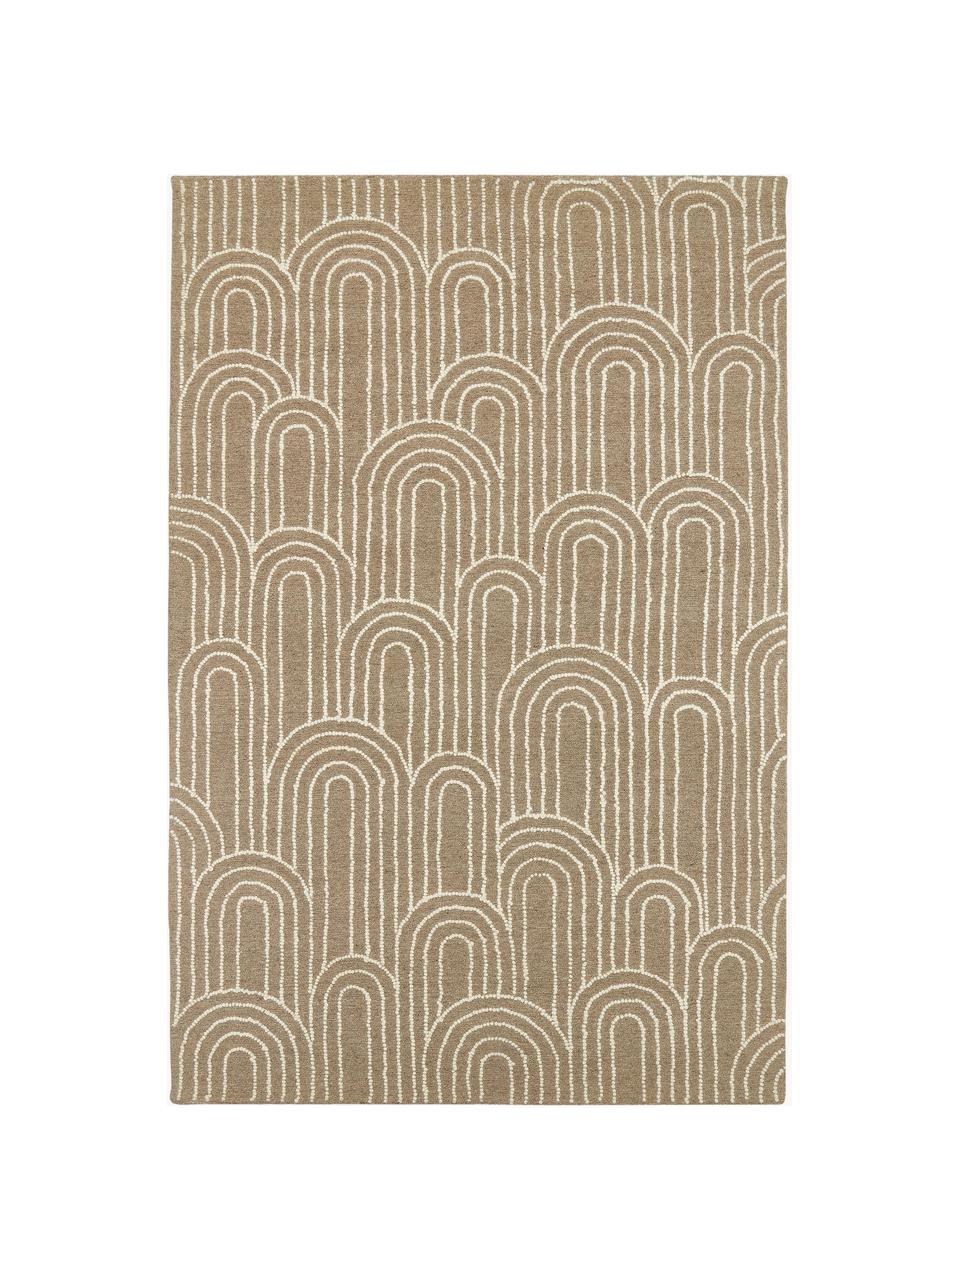 Ručne tkaný vlnený koberec Arco, 100 % vlna

V prvých týždňoch používania môžu vlnené koberce uvoľňovať vlákna, tento jav zmizne po niekoľkých týždňoch používania, Béžová, krémovobiela, Š 200 x D 300 cm (veľkosť L)